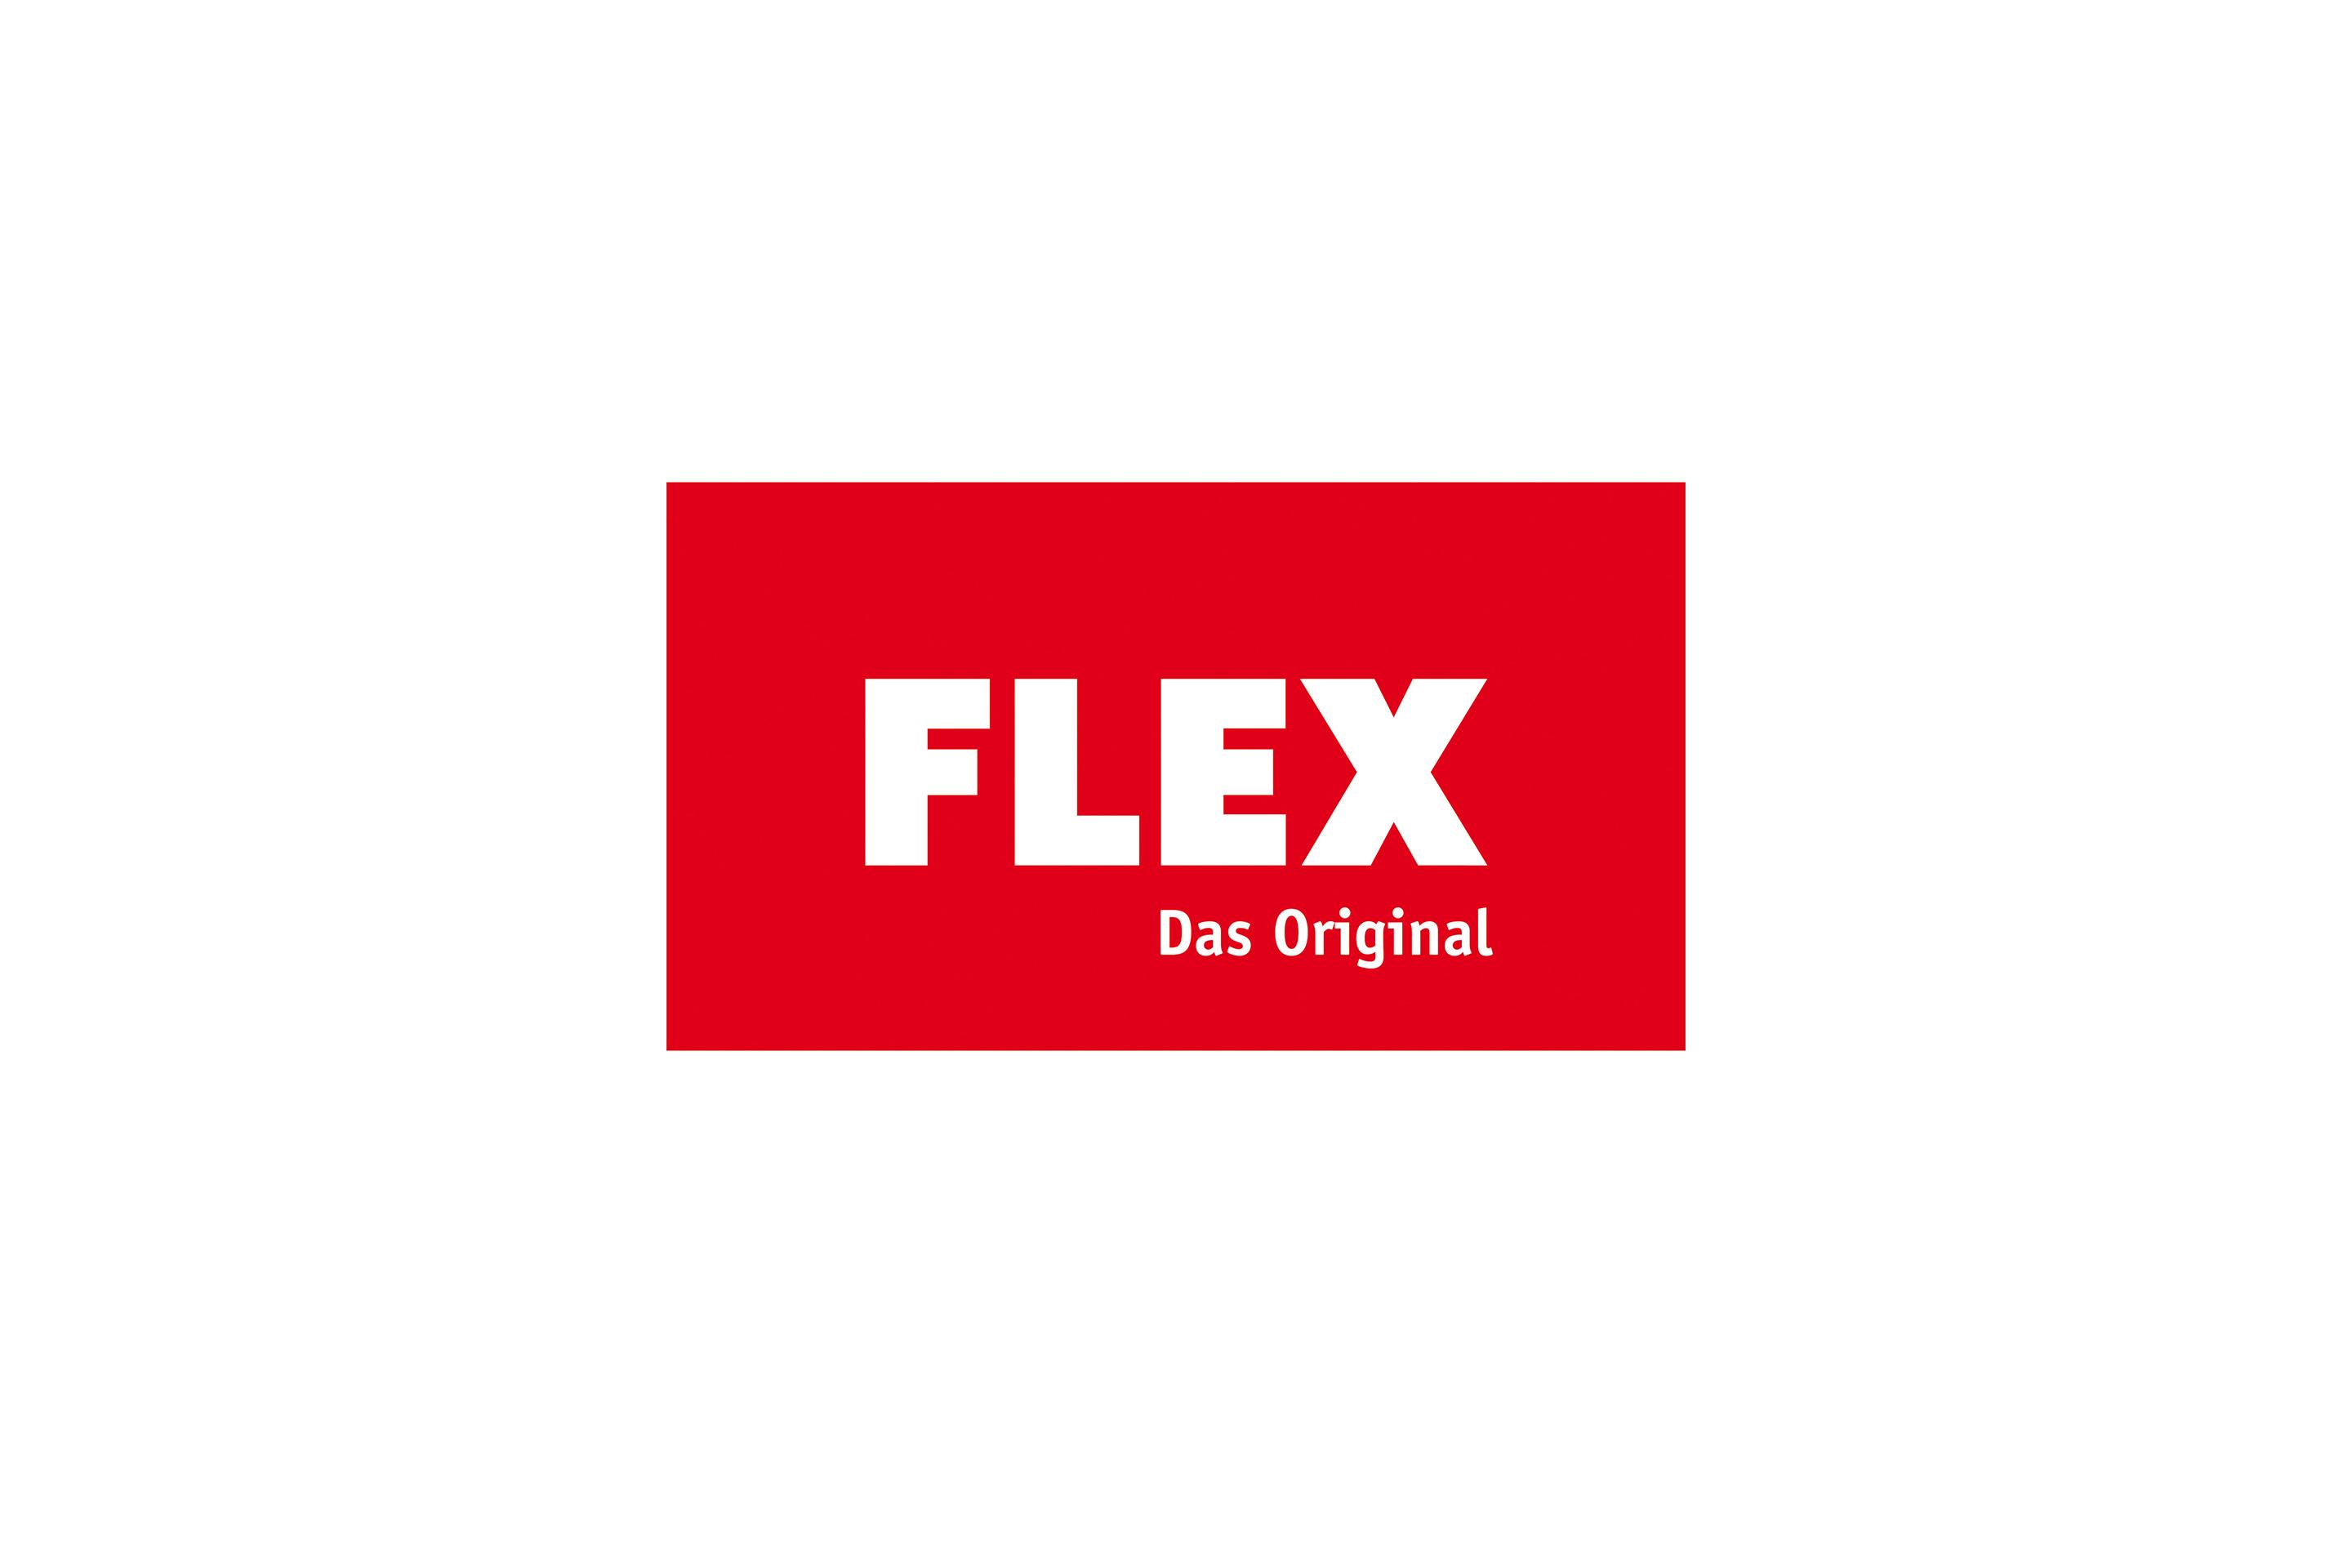 FLEX Originál Logo História